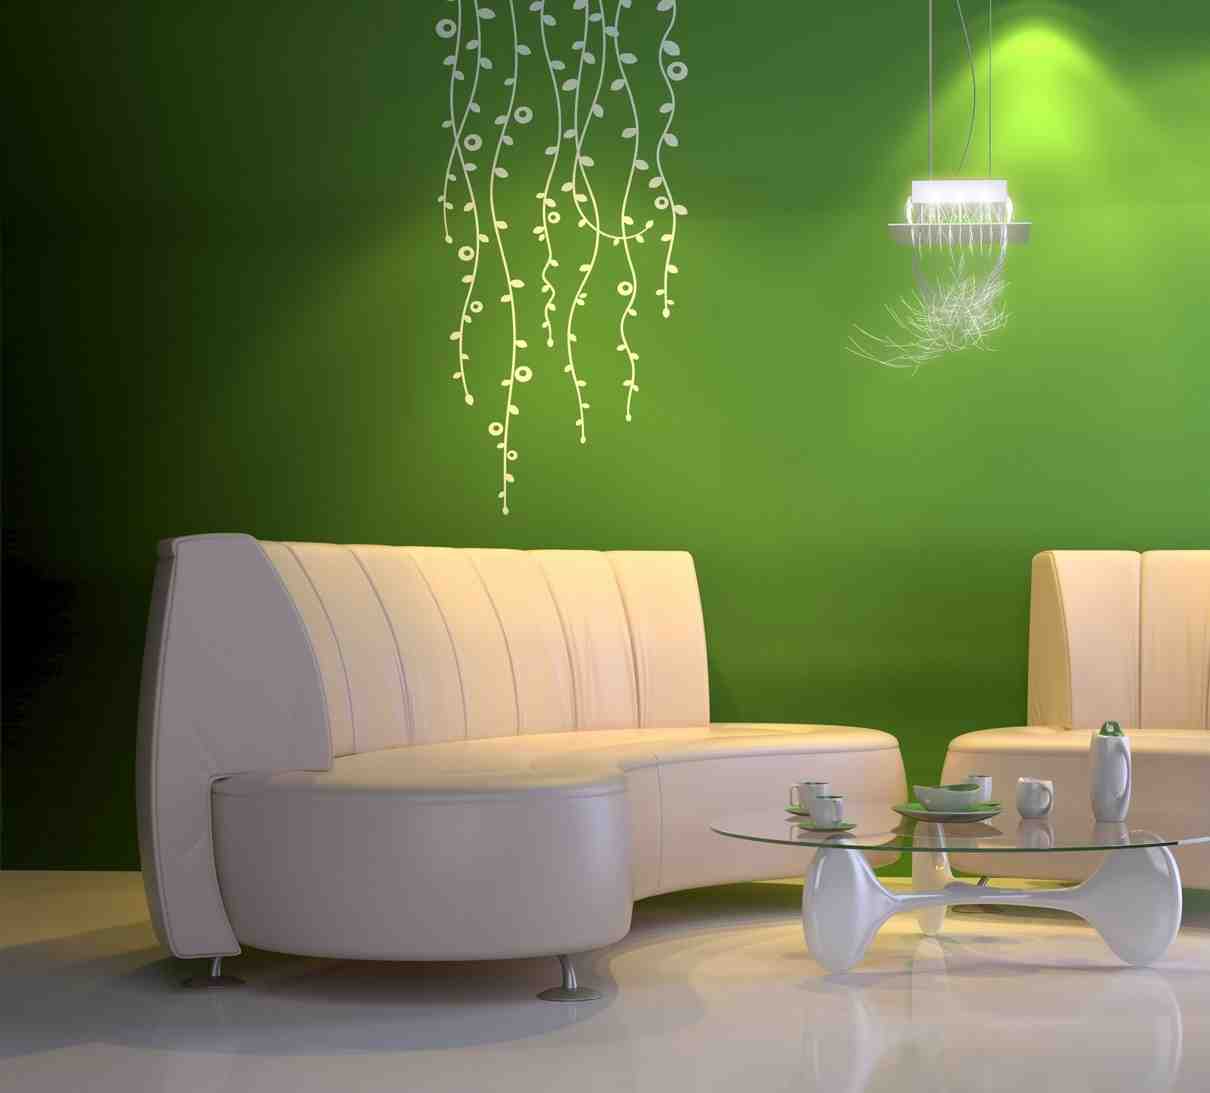 Wall Paint Ideas for Living Room - Decor IdeasDecor Ideas